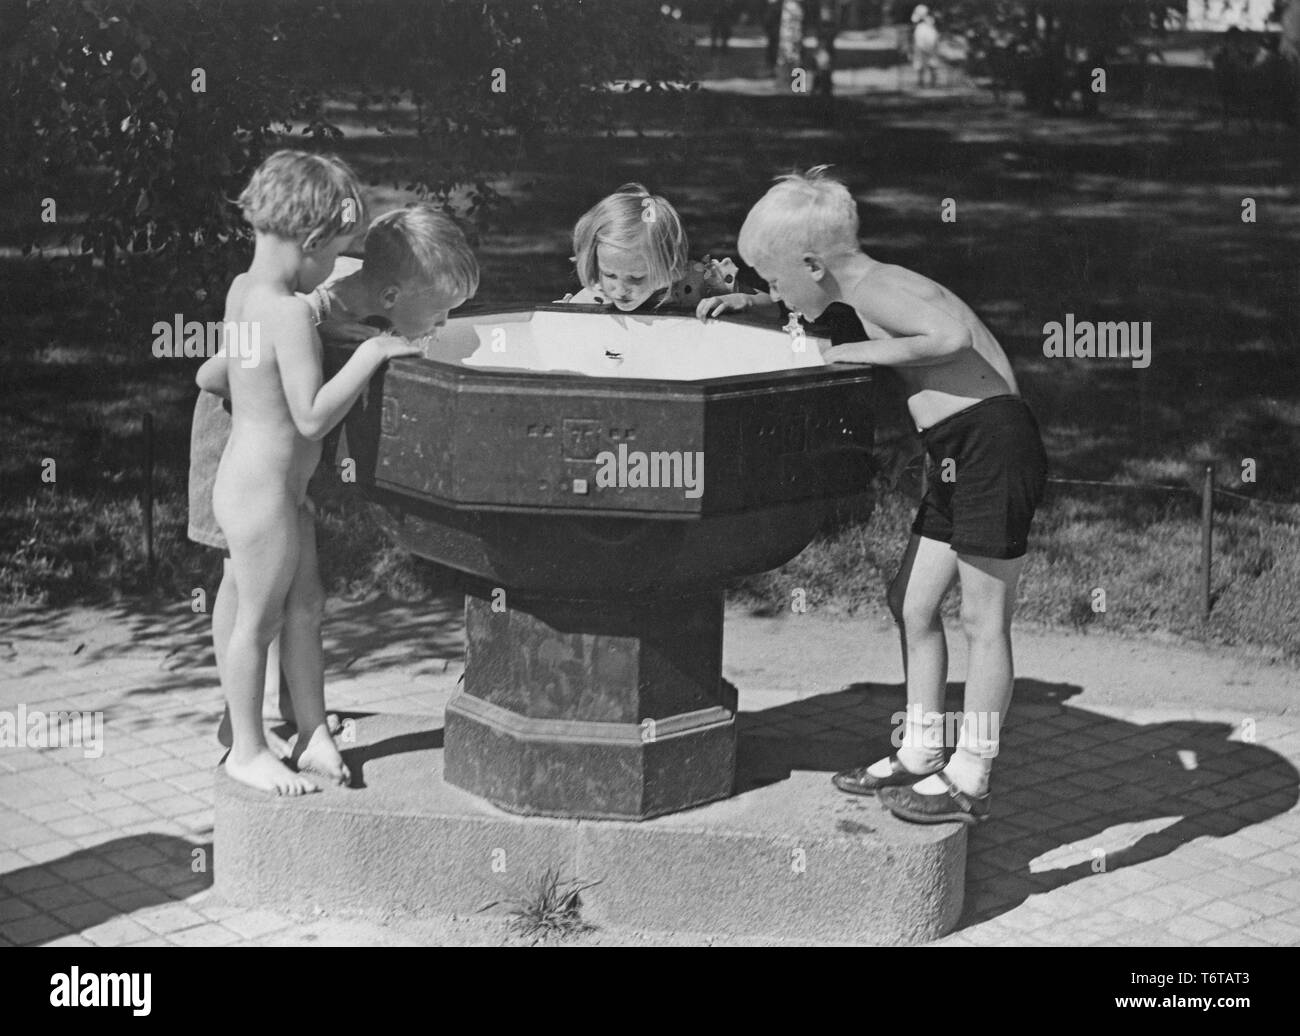 Estate di 1940s. Quattro bambini sono acqua potabile da una fontana di acqua in uno dei parchi di Stoccolma. Queste fontane pubbliche erano comuni e in questo momento è azionato spingendo la leva verso il basso e che l'acqua ha iniziato a flusso. La Svezia 1940s Foto Stock